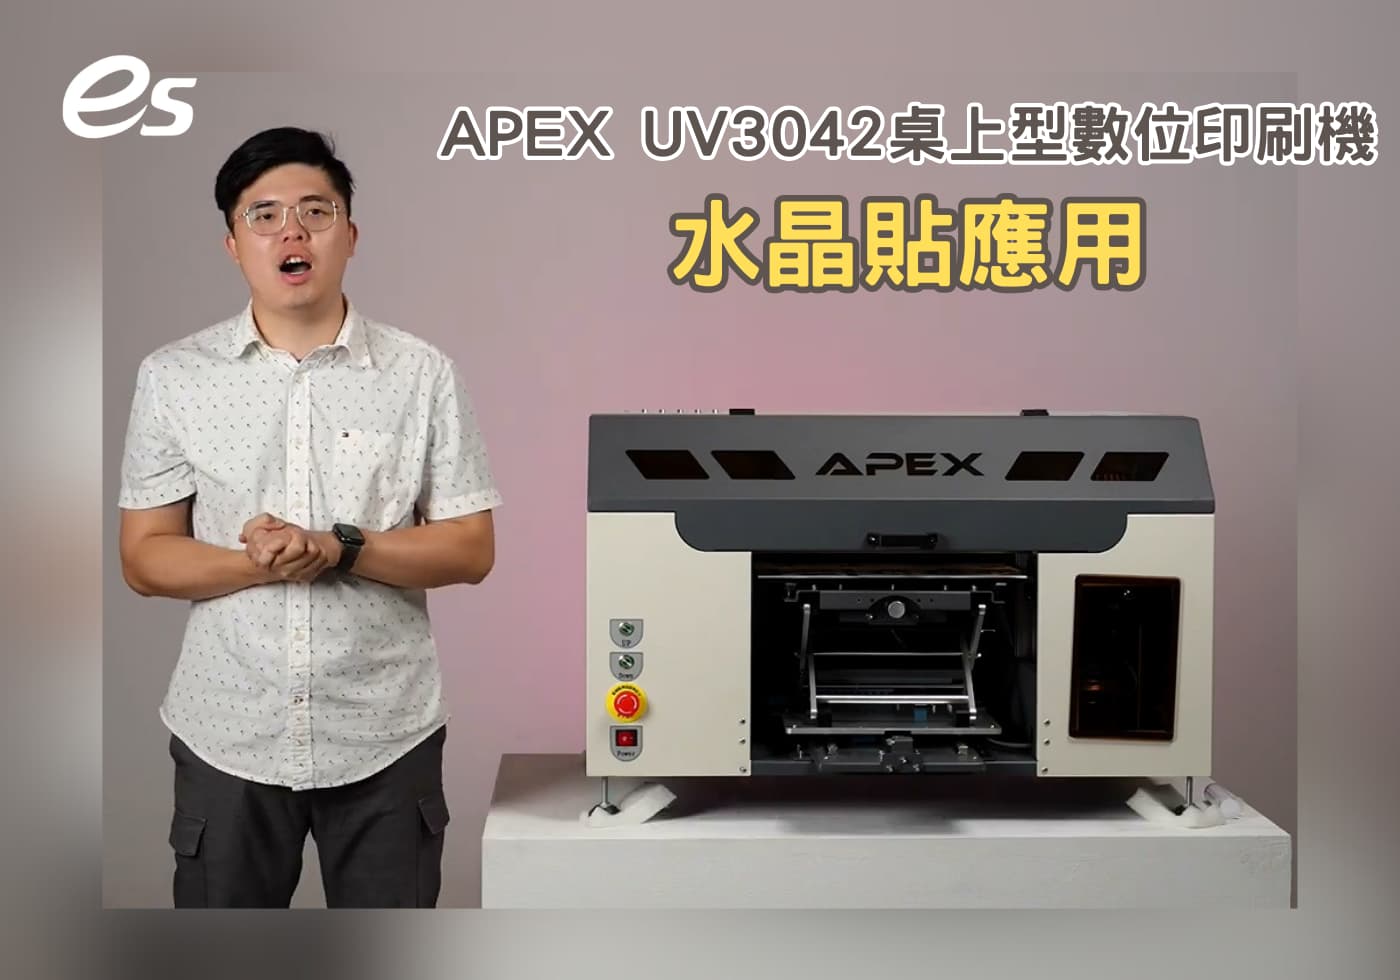 閱讀更多文章 APEX UV3042 桌上型數位印刷機的水晶貼應用